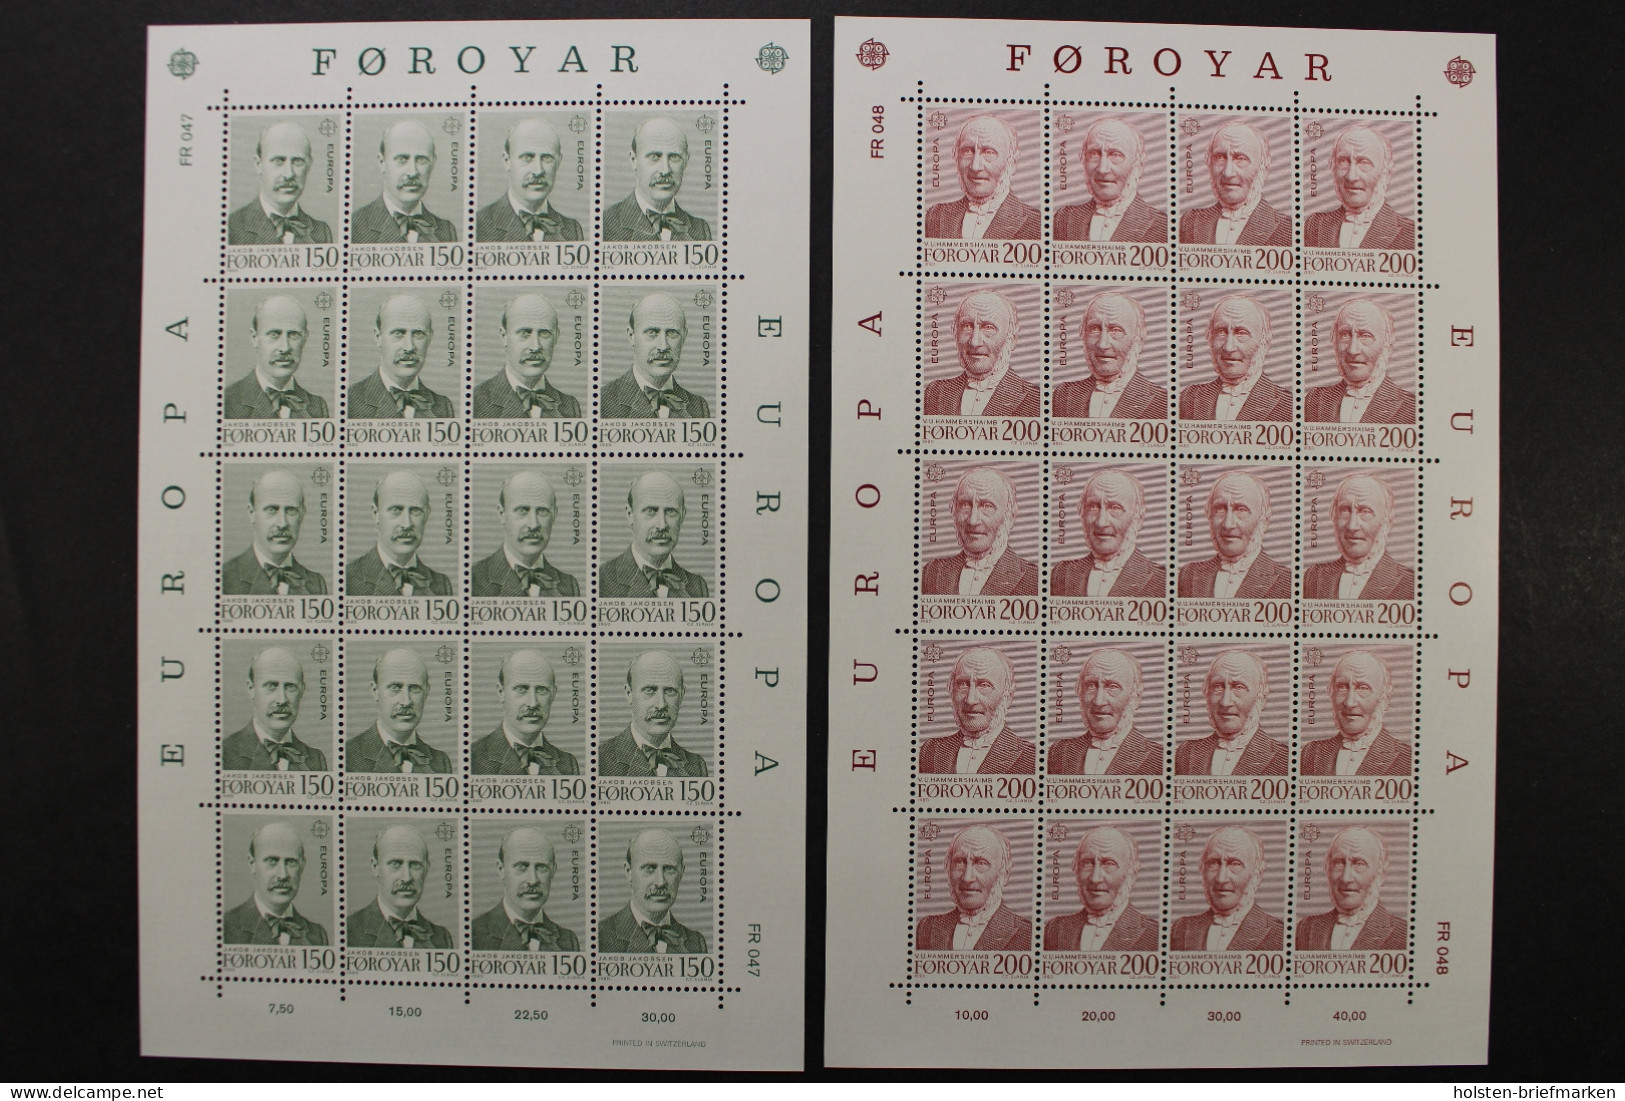 Färöer, MiNr. 53-54, Kleinbögen, Postfrisch - Färöer Inseln